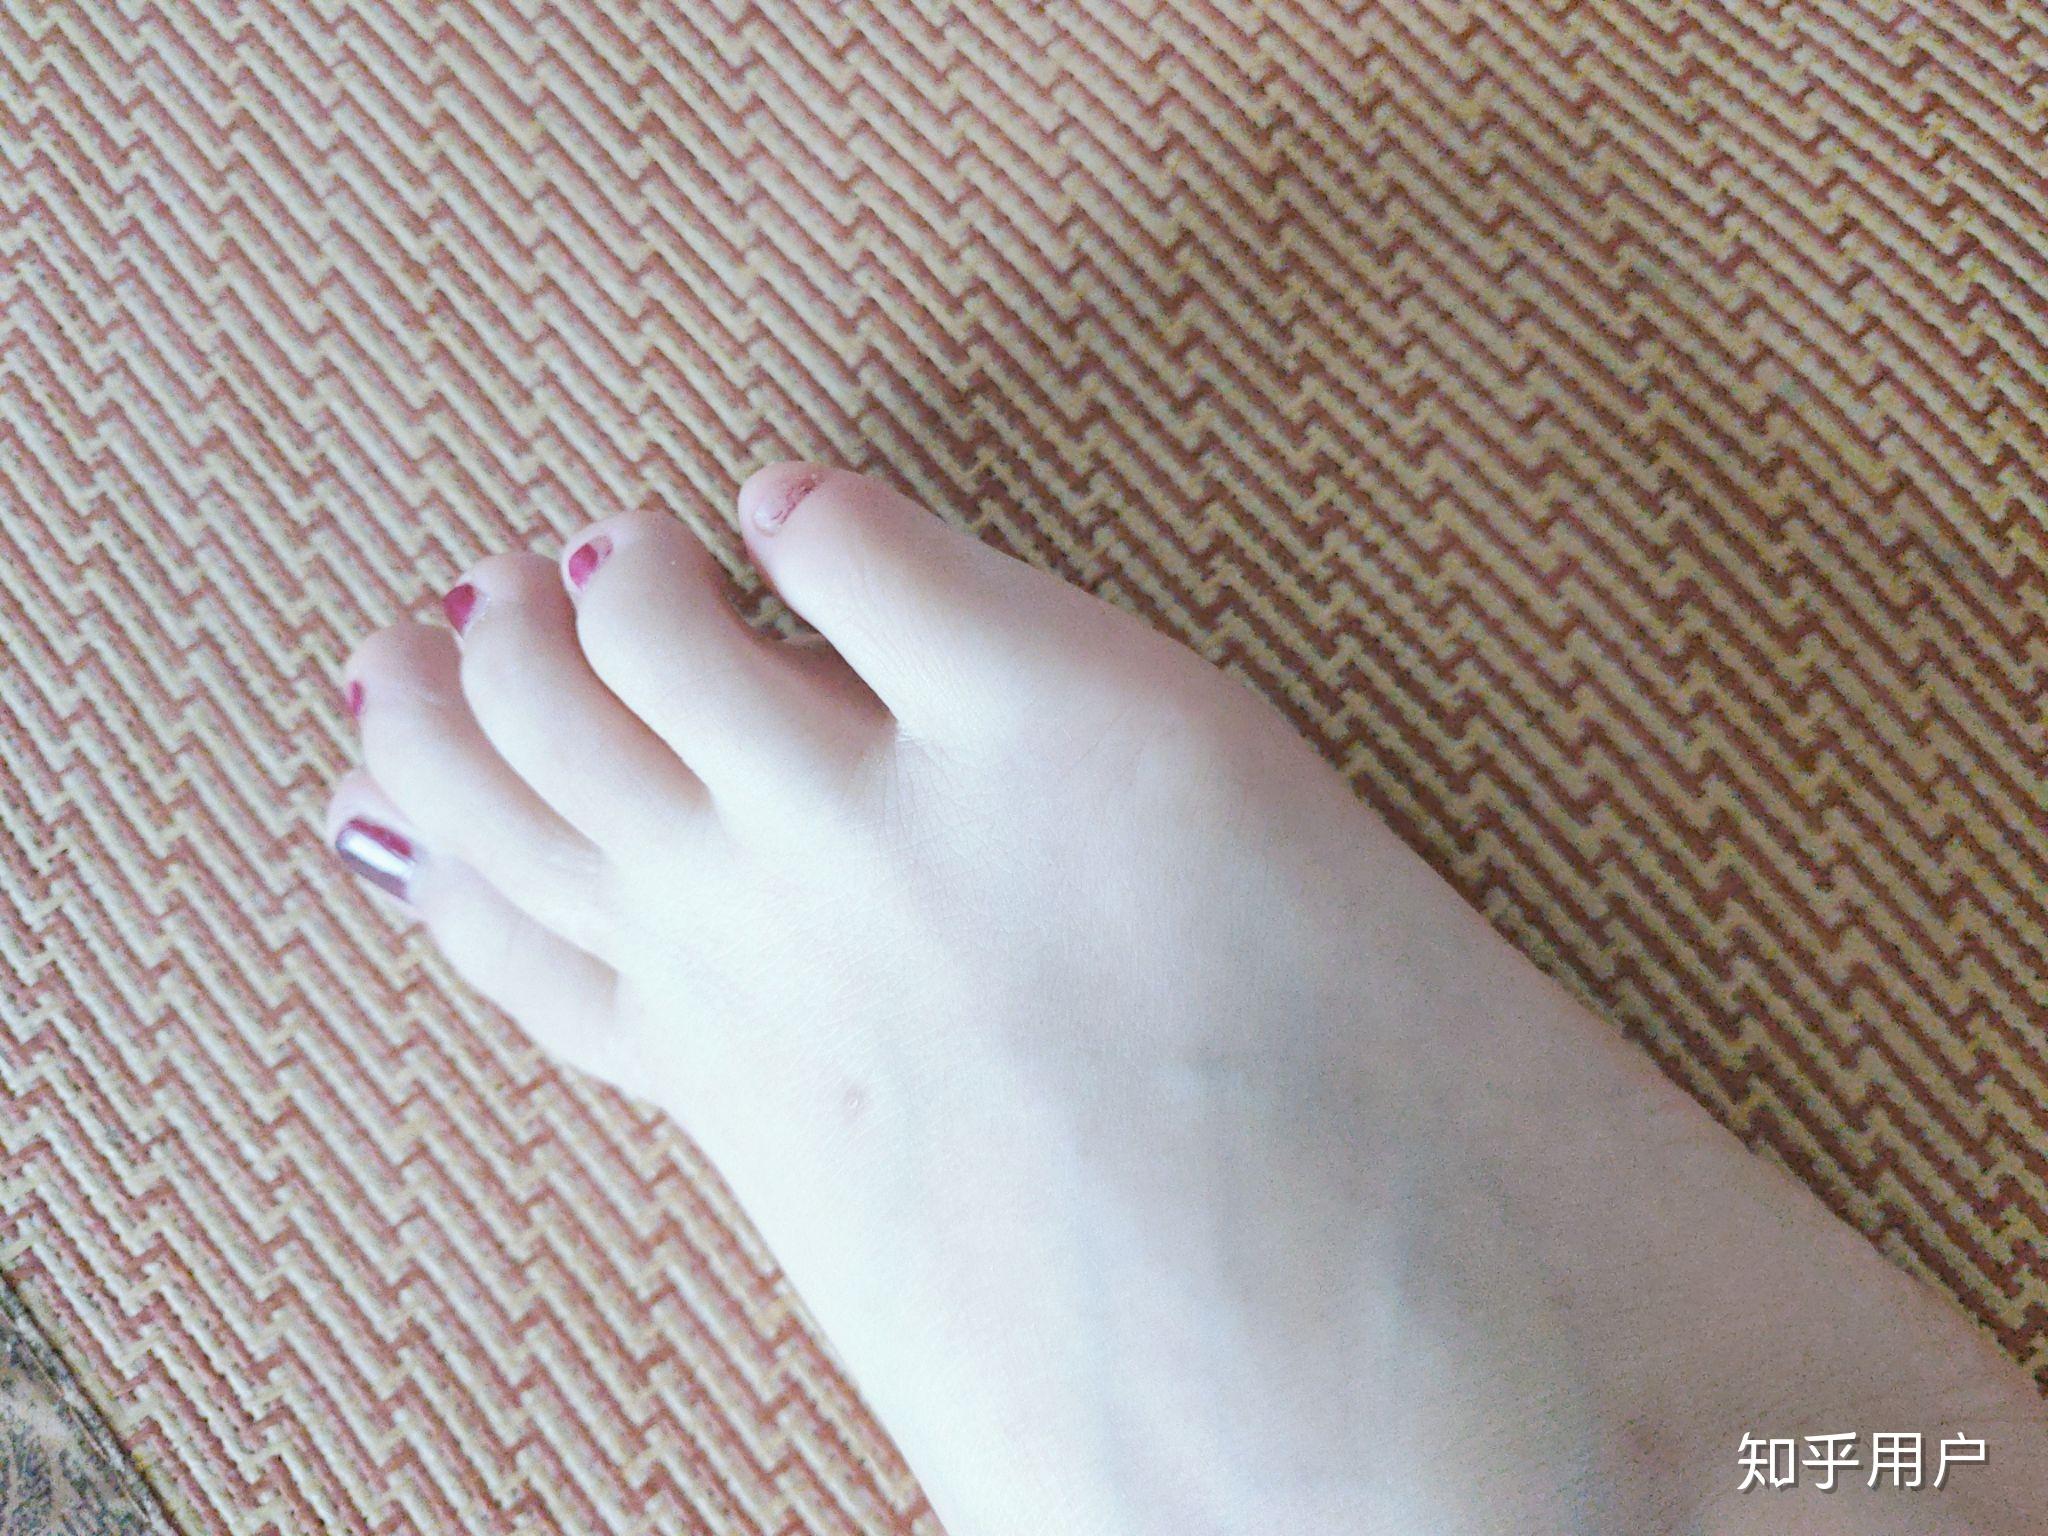 为什么女生喜欢在脚趾甲上涂红色指甲油? 